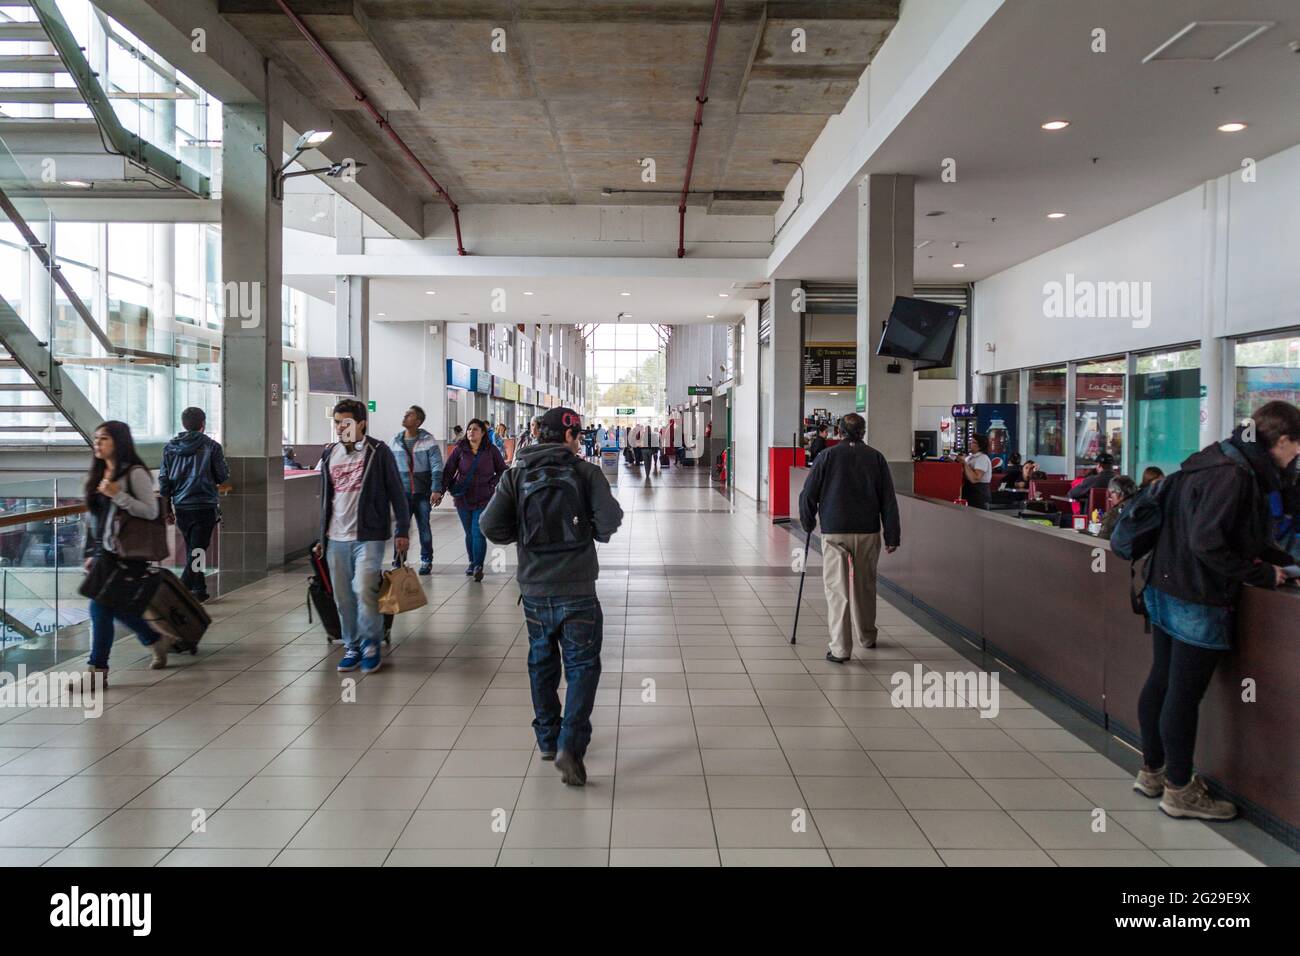 PUERTO MONTT, CILE - 1 MARZO 2015: Interno di un terminal di autobus a Puerto Montt, Cile Foto Stock